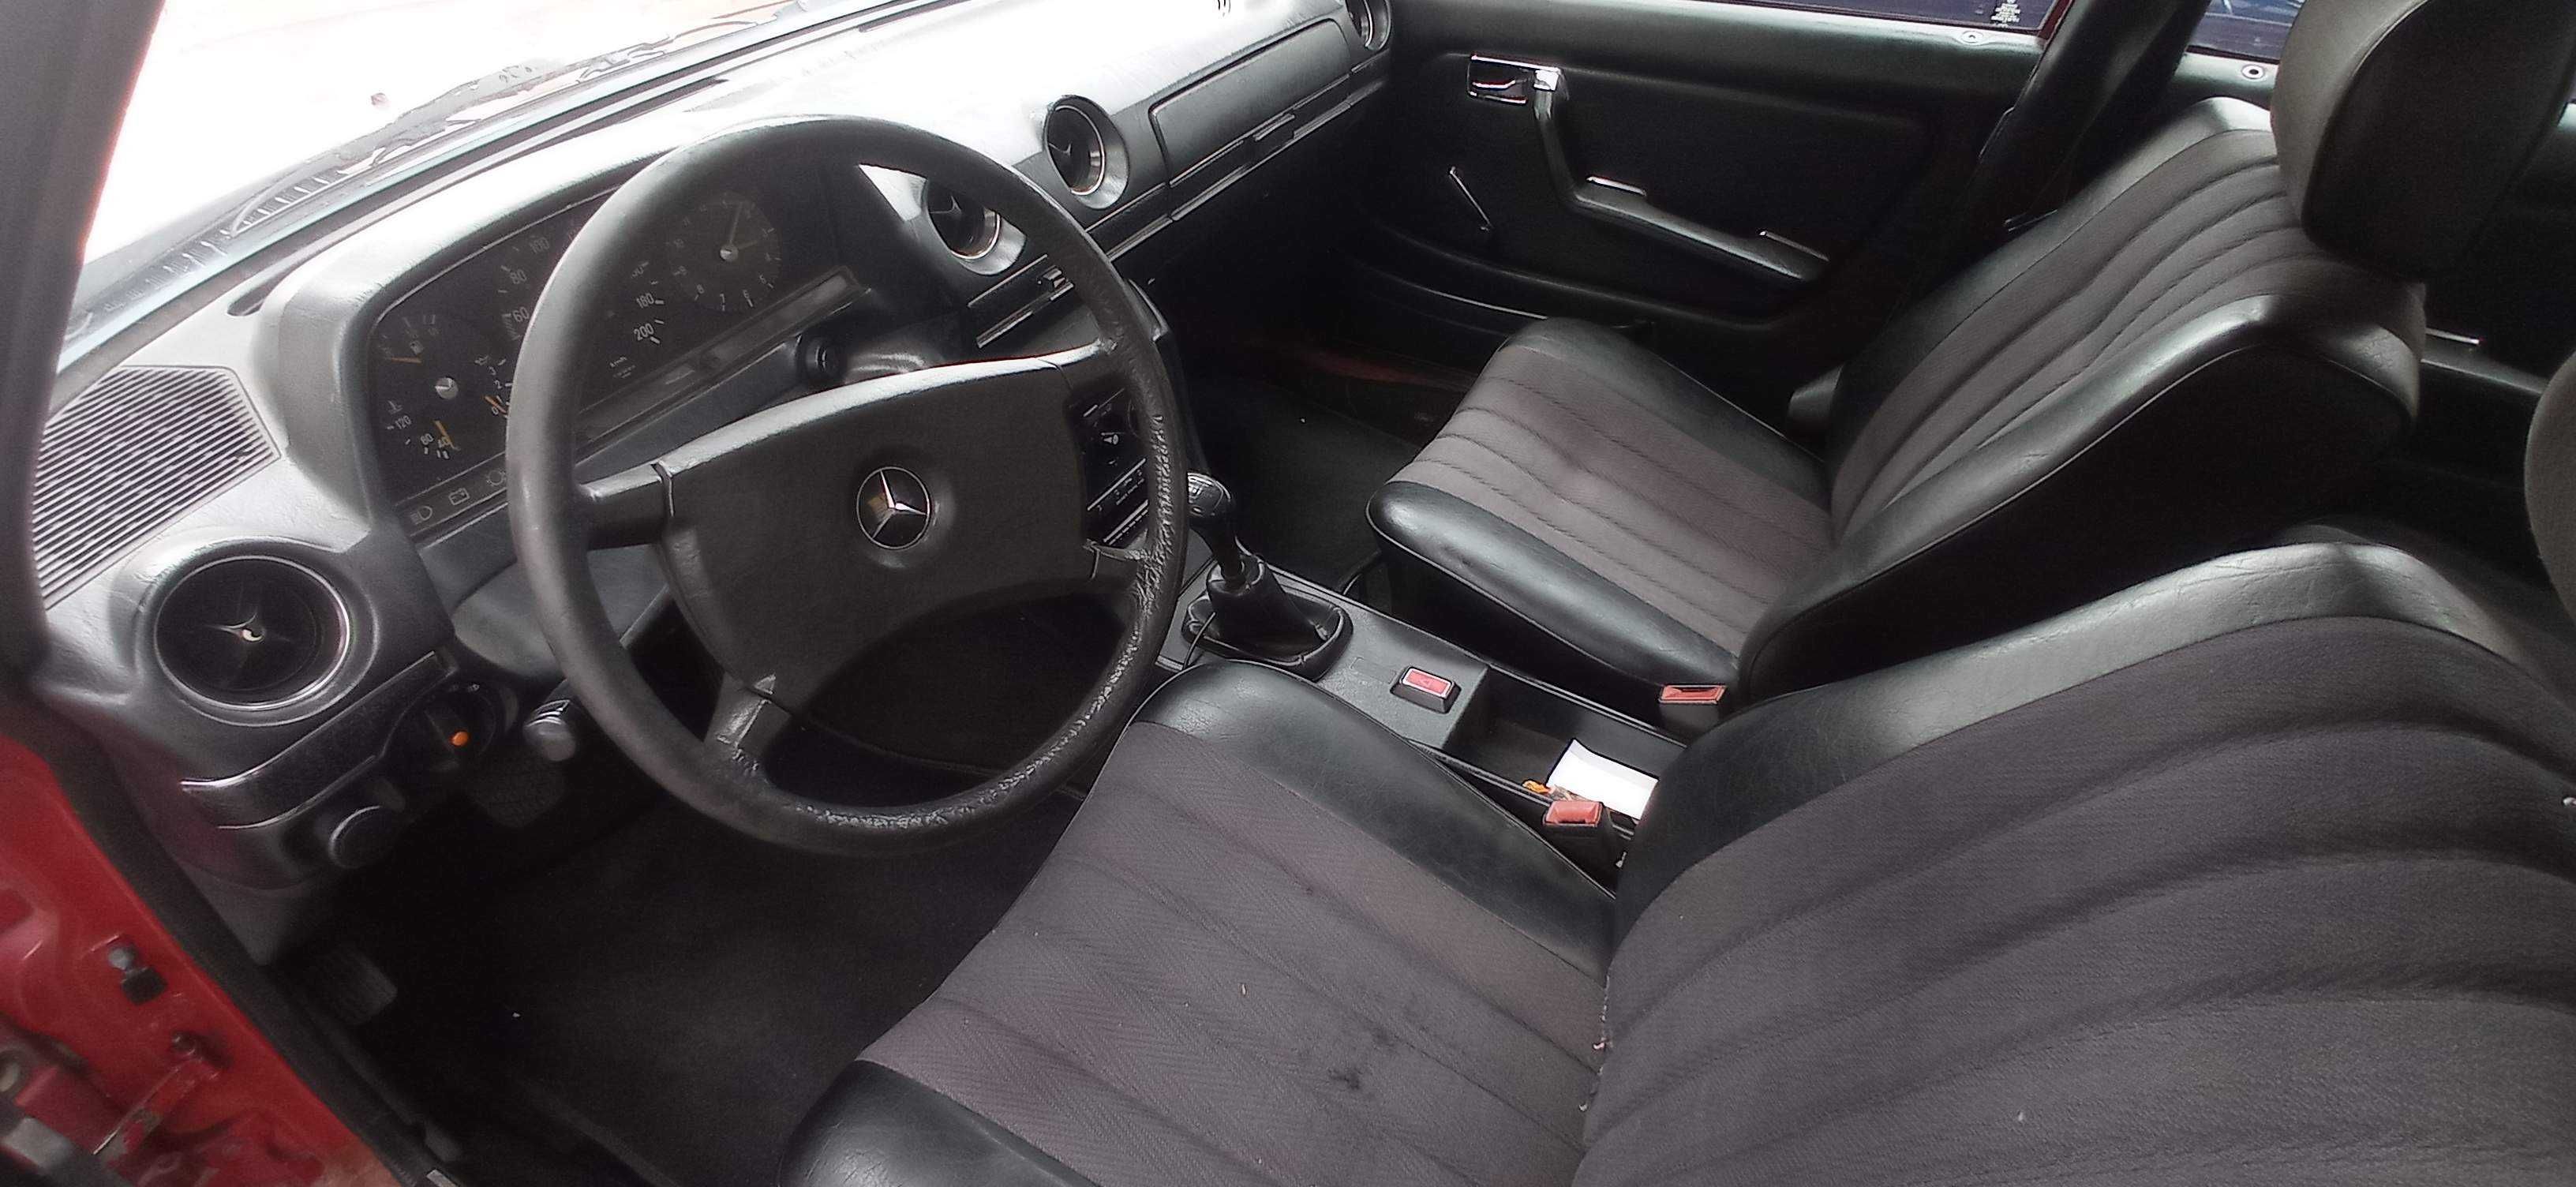 Mercedes W123 200 ,  2.0 бензин.  1980,  95% оригінал, прозора історія